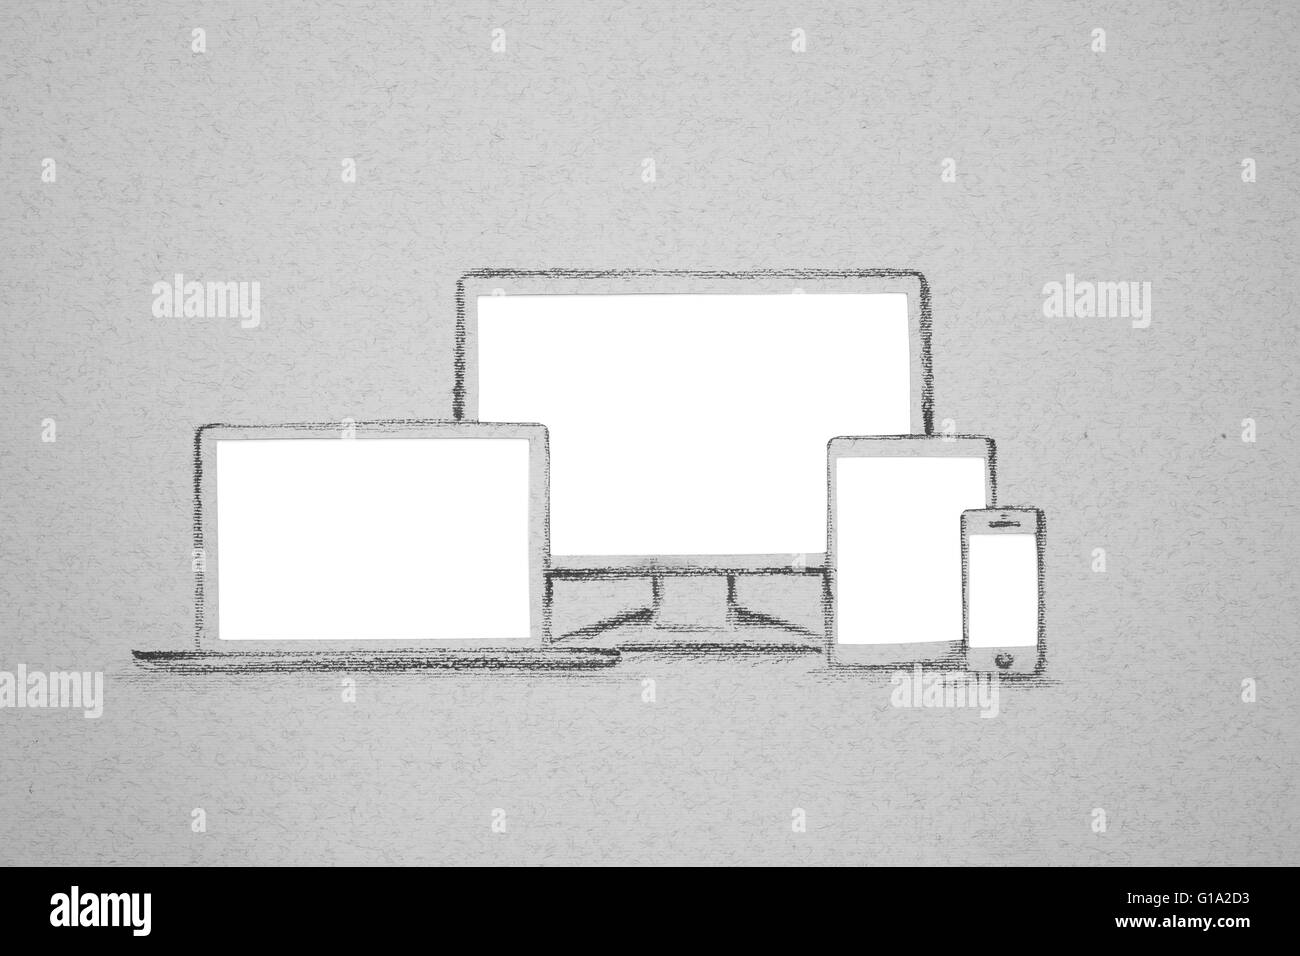 La photographie d'ensemble de l'appareil tirés sur papier gris blanc avec copie espace isolé, ordinateur portable moniteur PC tablette smartphone téléphone cellulaire Banque D'Images